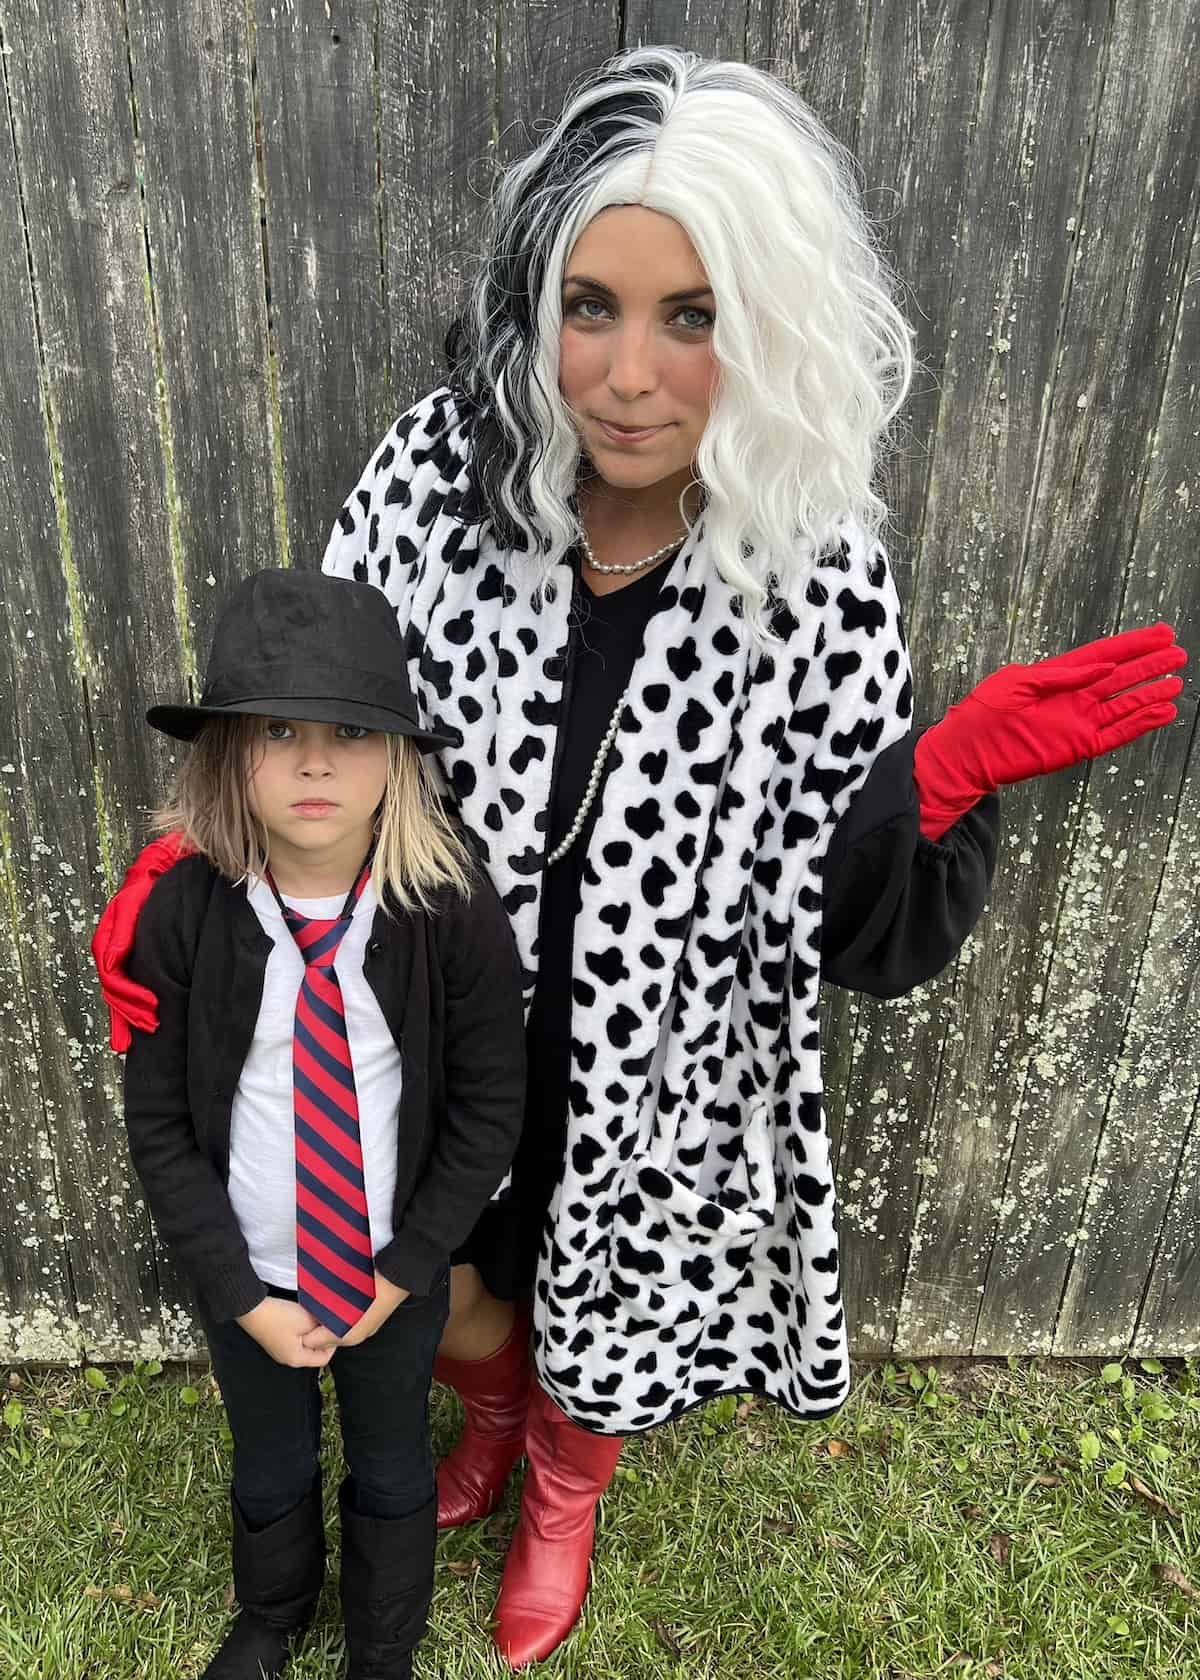 Cruella Family Costume Ideas for Halloween - an easy, DIY 101 Dalmatians family costume with a Cruella De Vil twist!